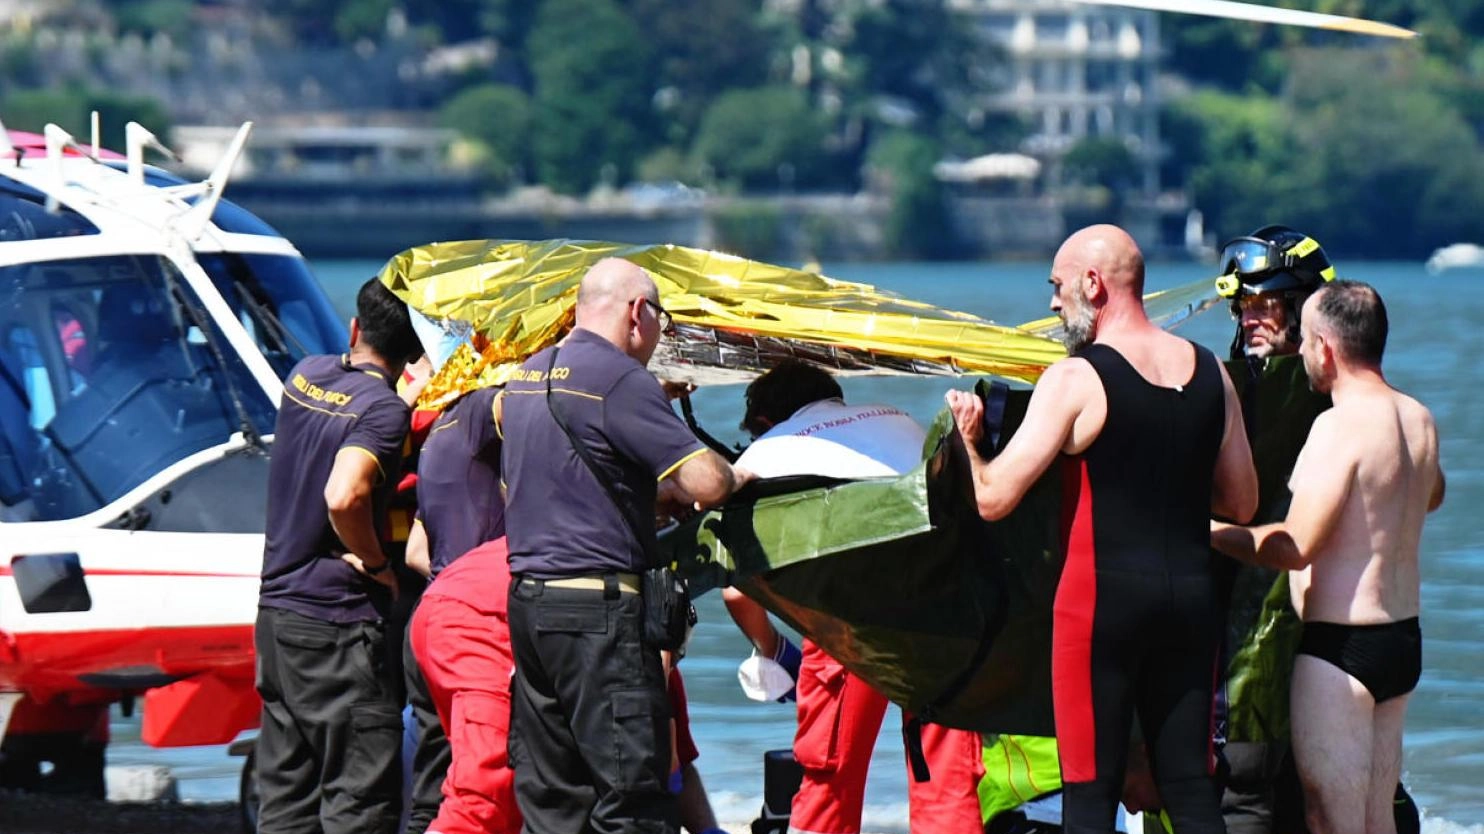 

Morte fatale a Milano: giovane rifugiato egiziano annega nel lago